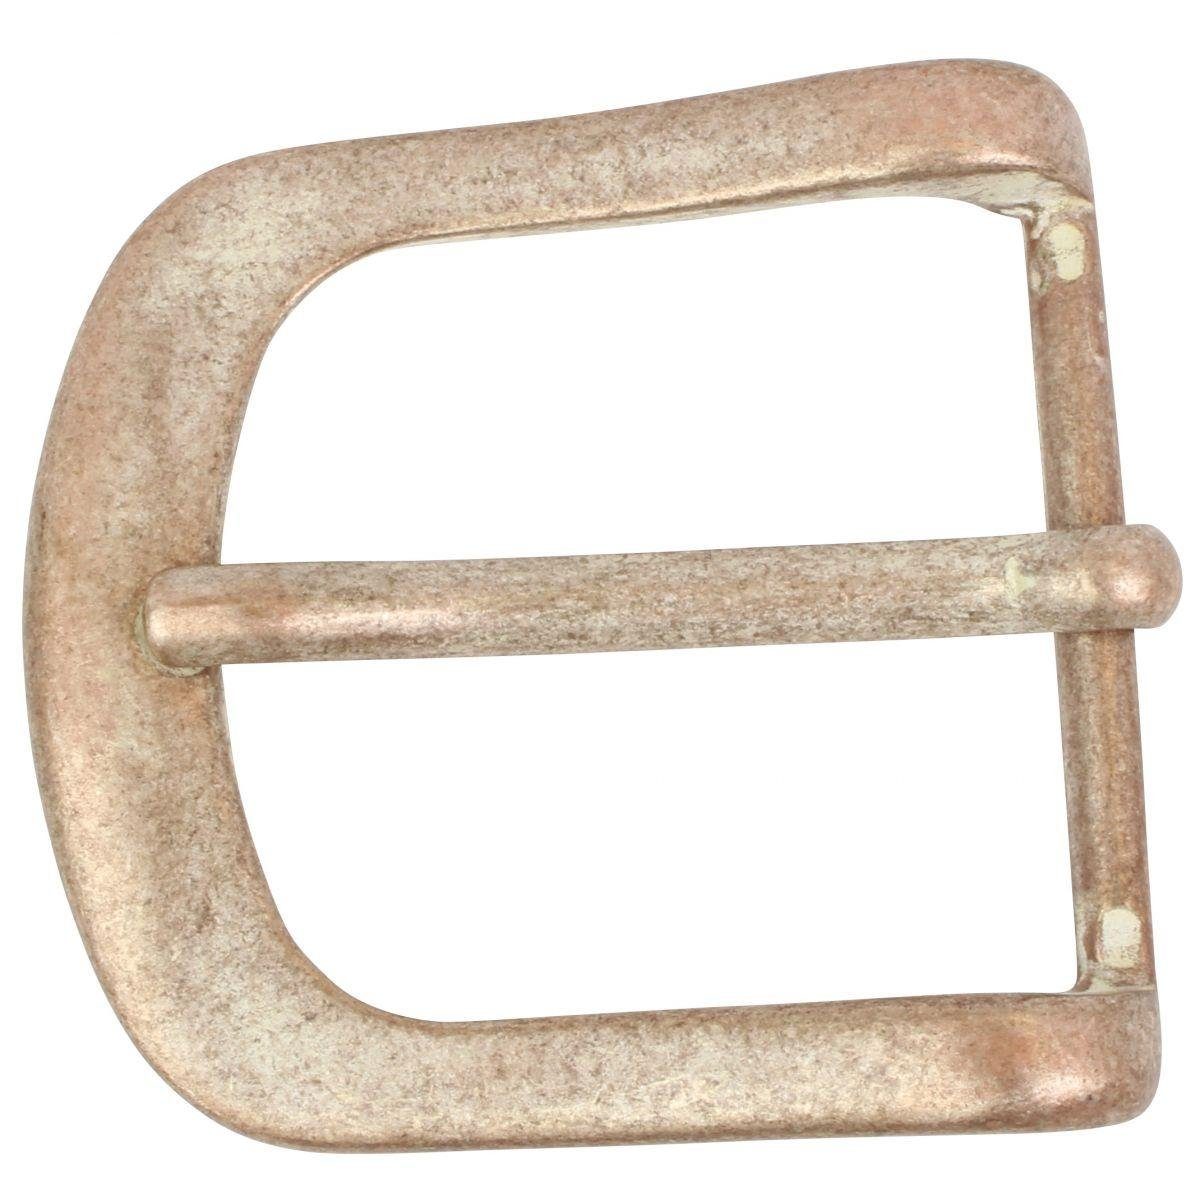 BELTINGER Gürtelschnalle 4,0 cm - Gürtelschließe Dorn-Schließe 40mm Gürtel - - Rame Wechselschließe